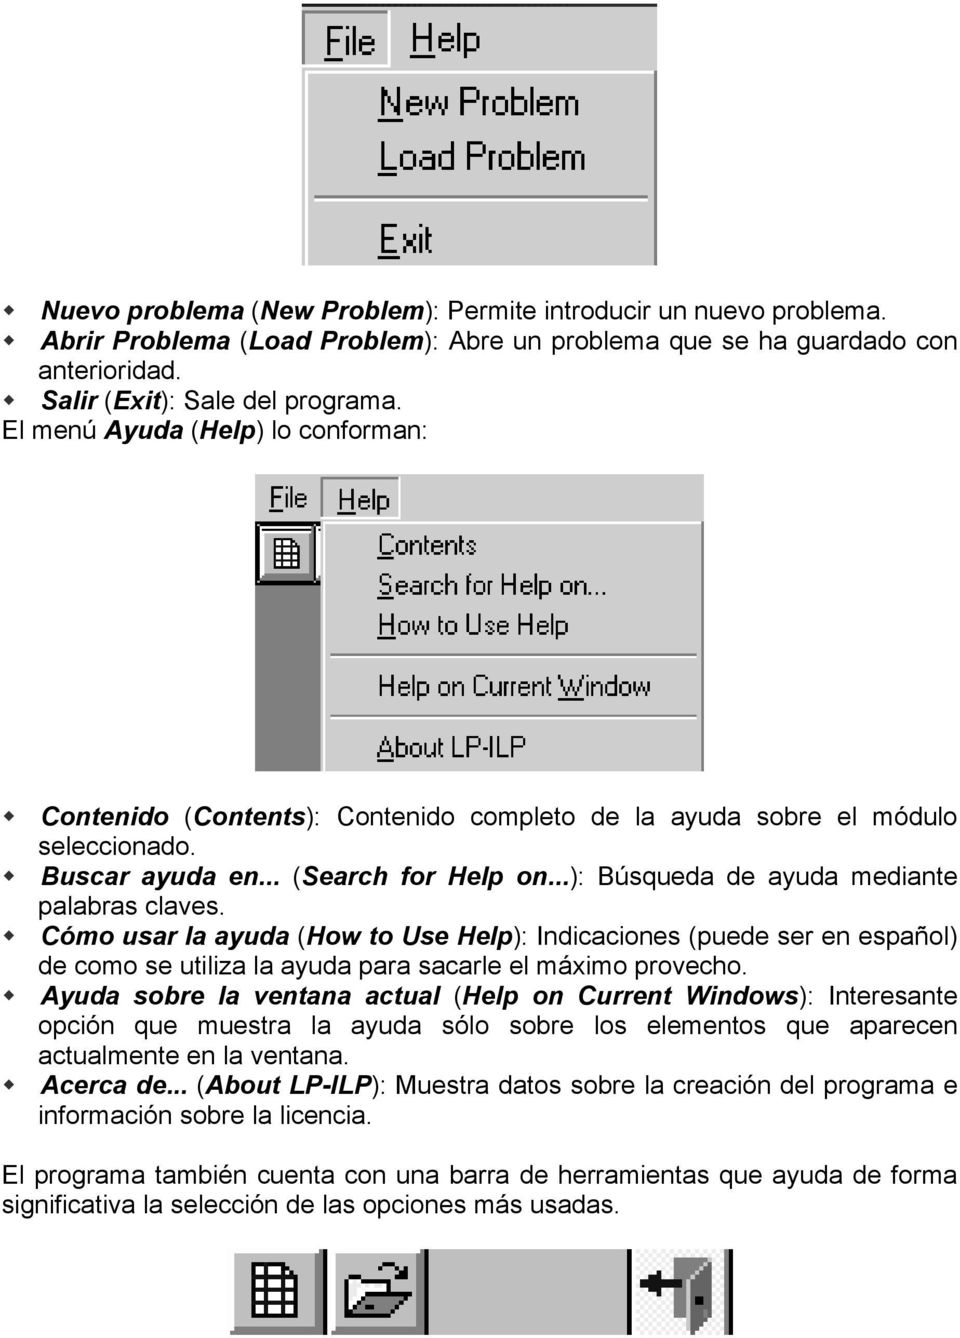 ..): Búsqueda de ayuda mediante palabras claves. Cómo usar la ayuda (How to Use Help): Indicaciones (puede ser en español) de como se utiliza la ayuda para sacarle el máximo provecho.